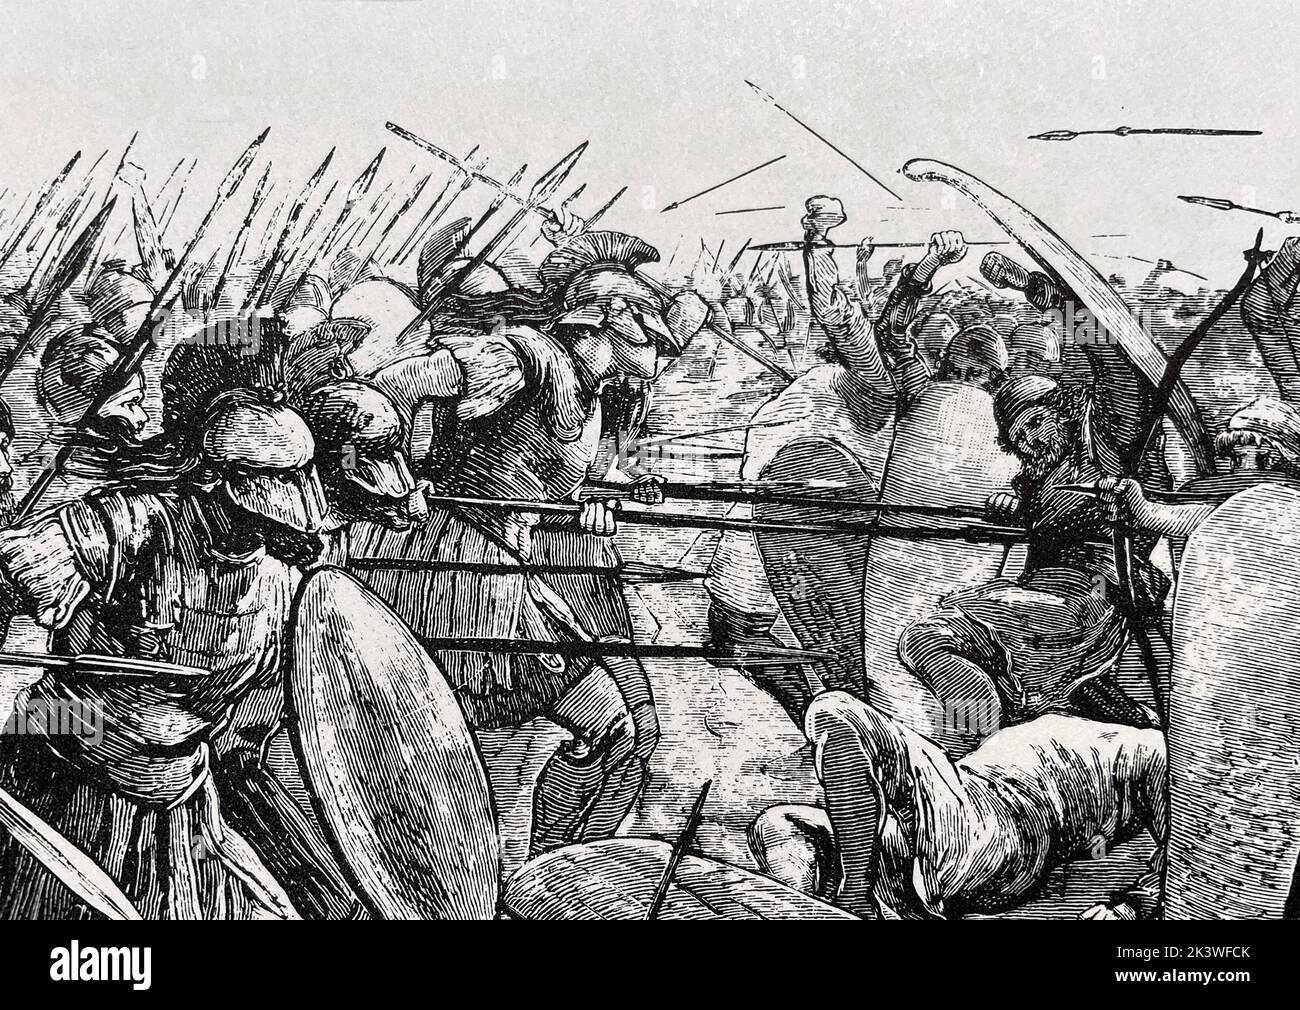 BATTAGLIA DI PLATAEA 479 A.C. Gli spartani a sinistra attaccano e sconfiggono i persiani Foto Stock